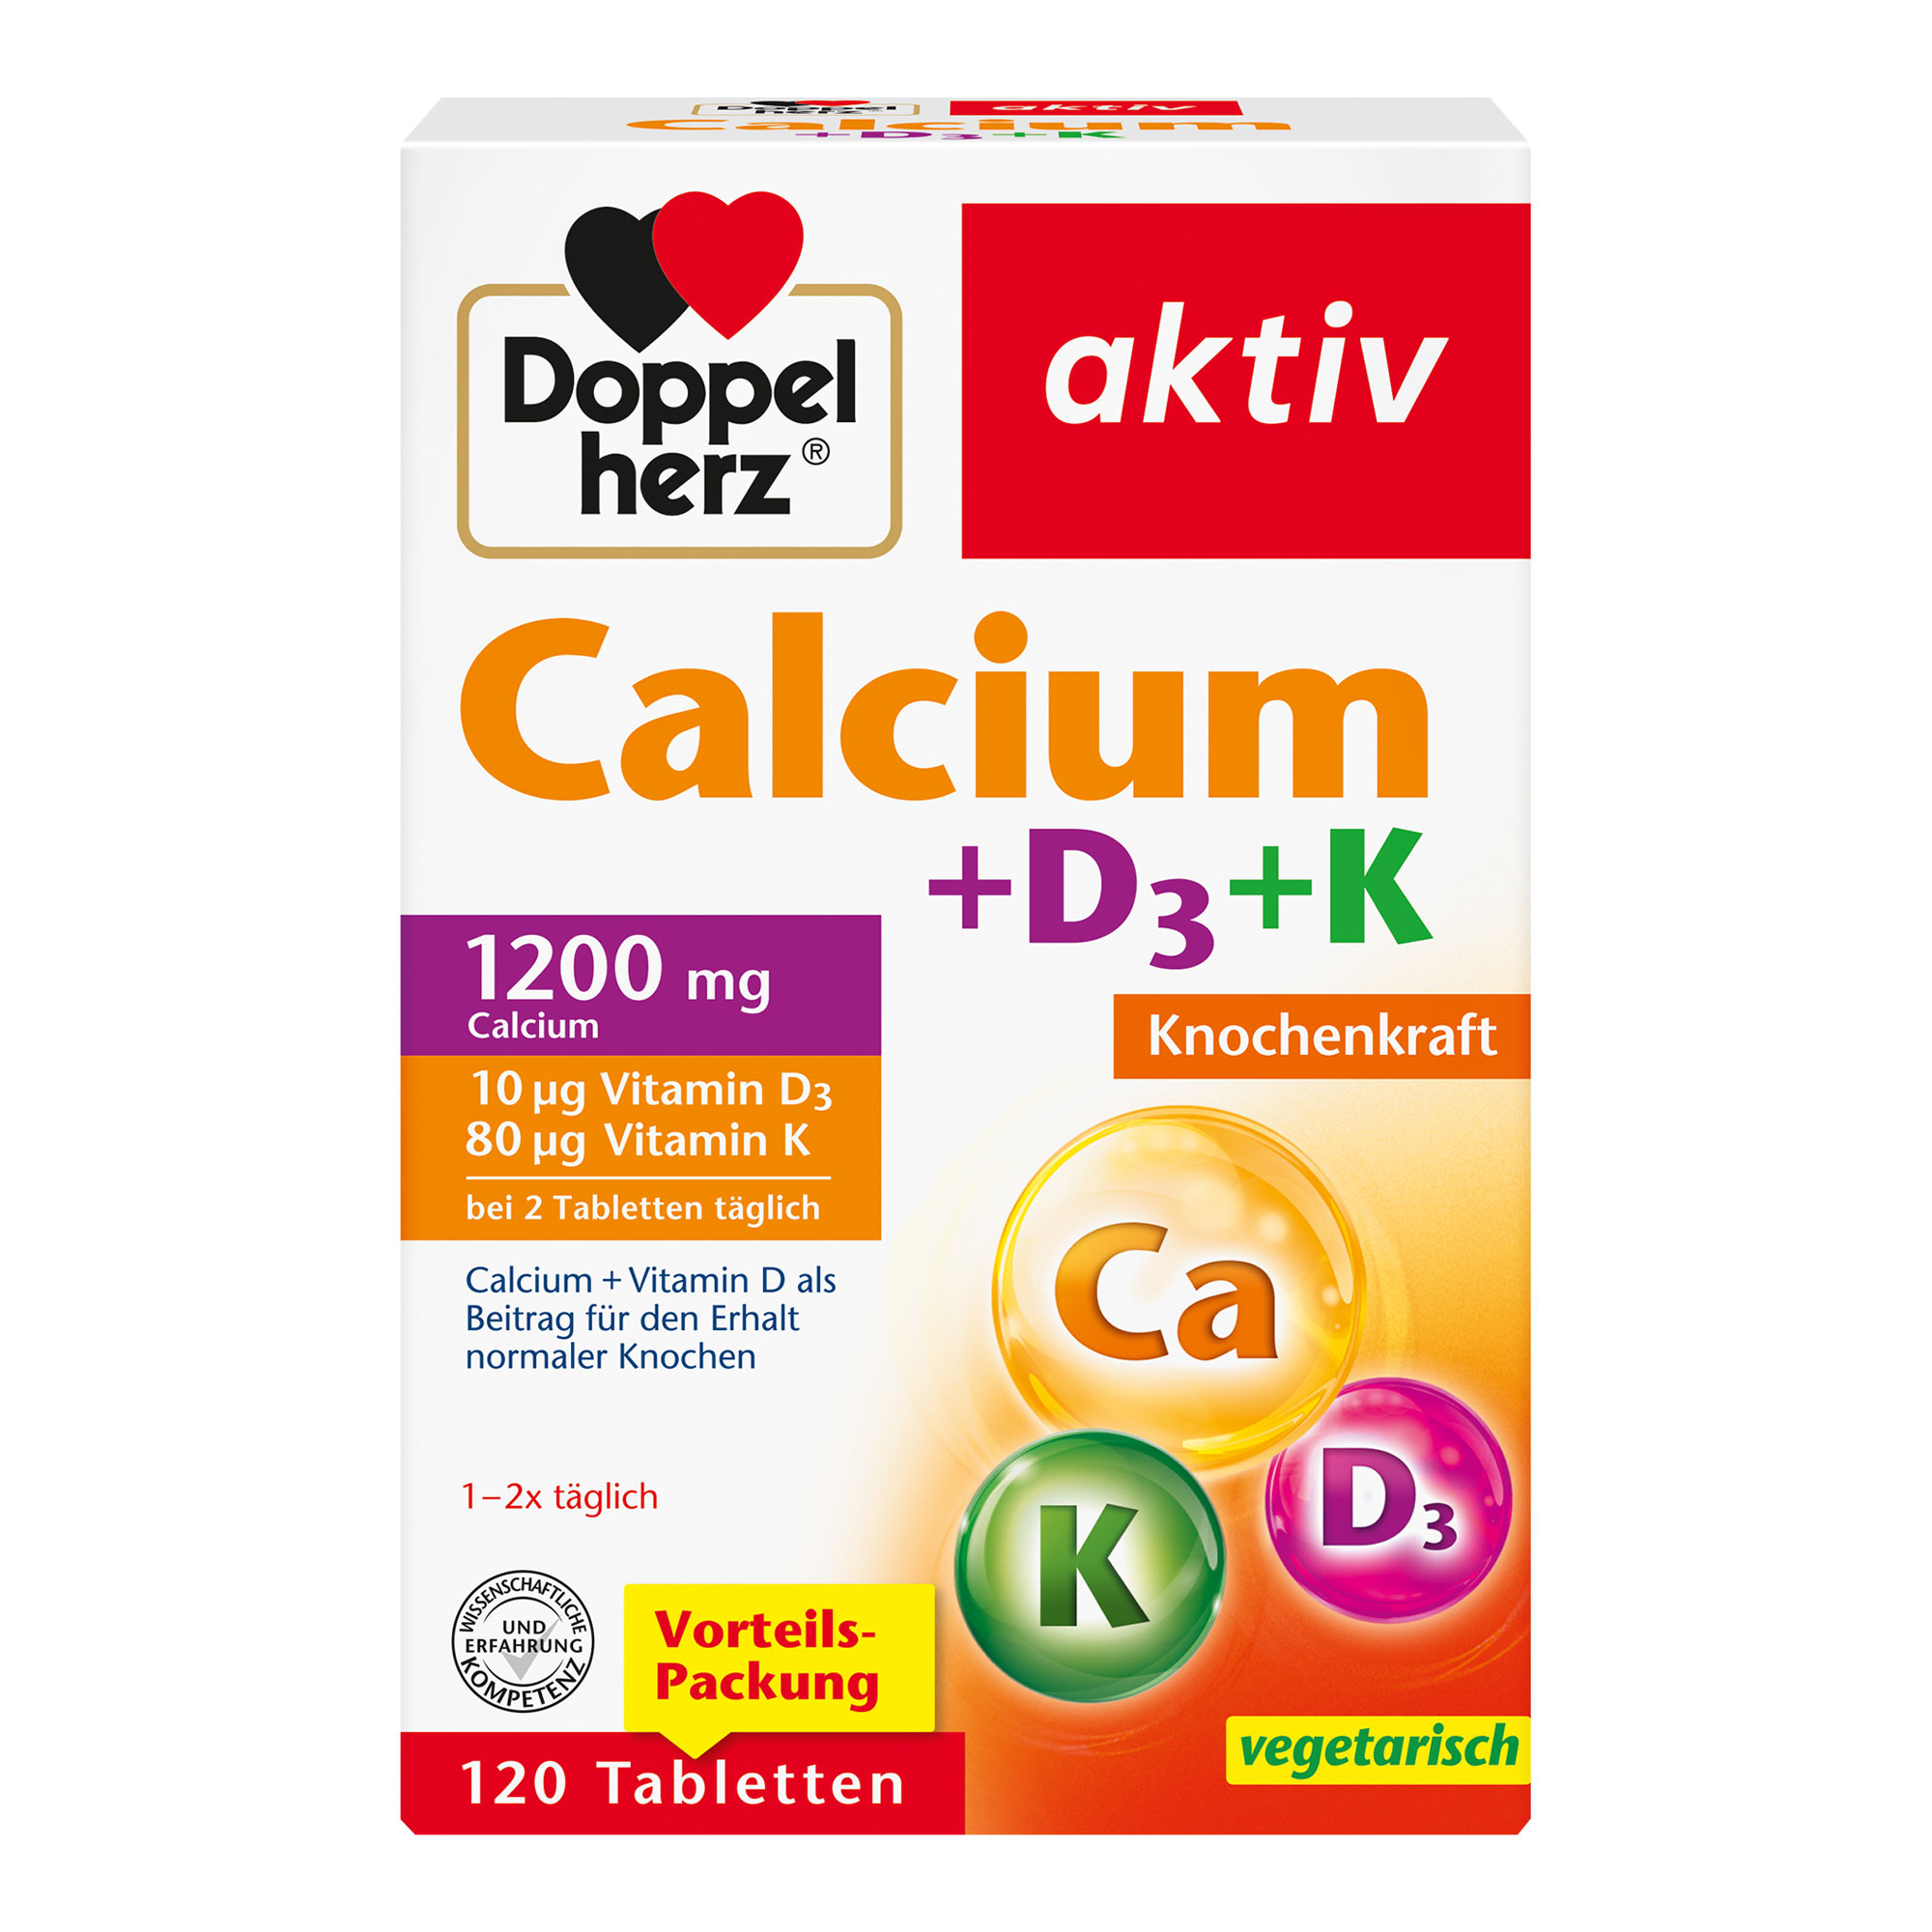 Nahrungsergänzungsmittel mit Calcium, Vitamin D und Vitamin K.